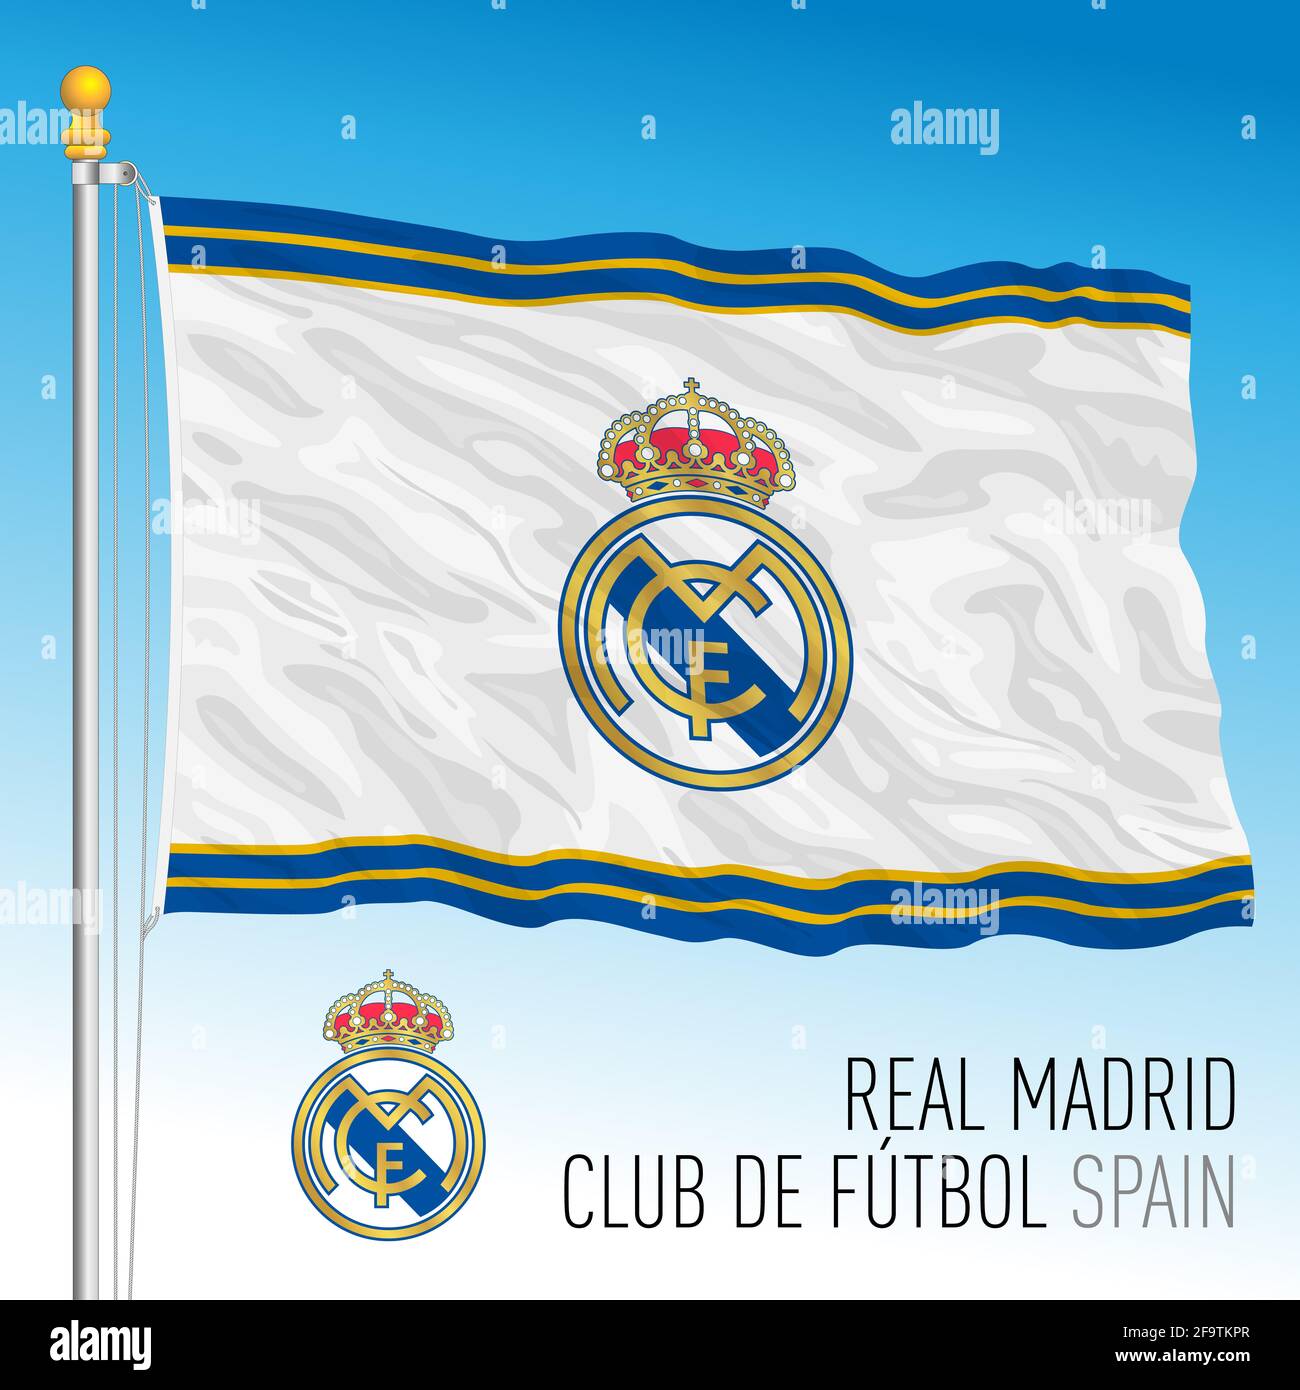 Europe, année 2021, drapeau du Real Madrid football Club et équipe de blason dans le nouveau championnat de Super League, illustration Banque D'Images